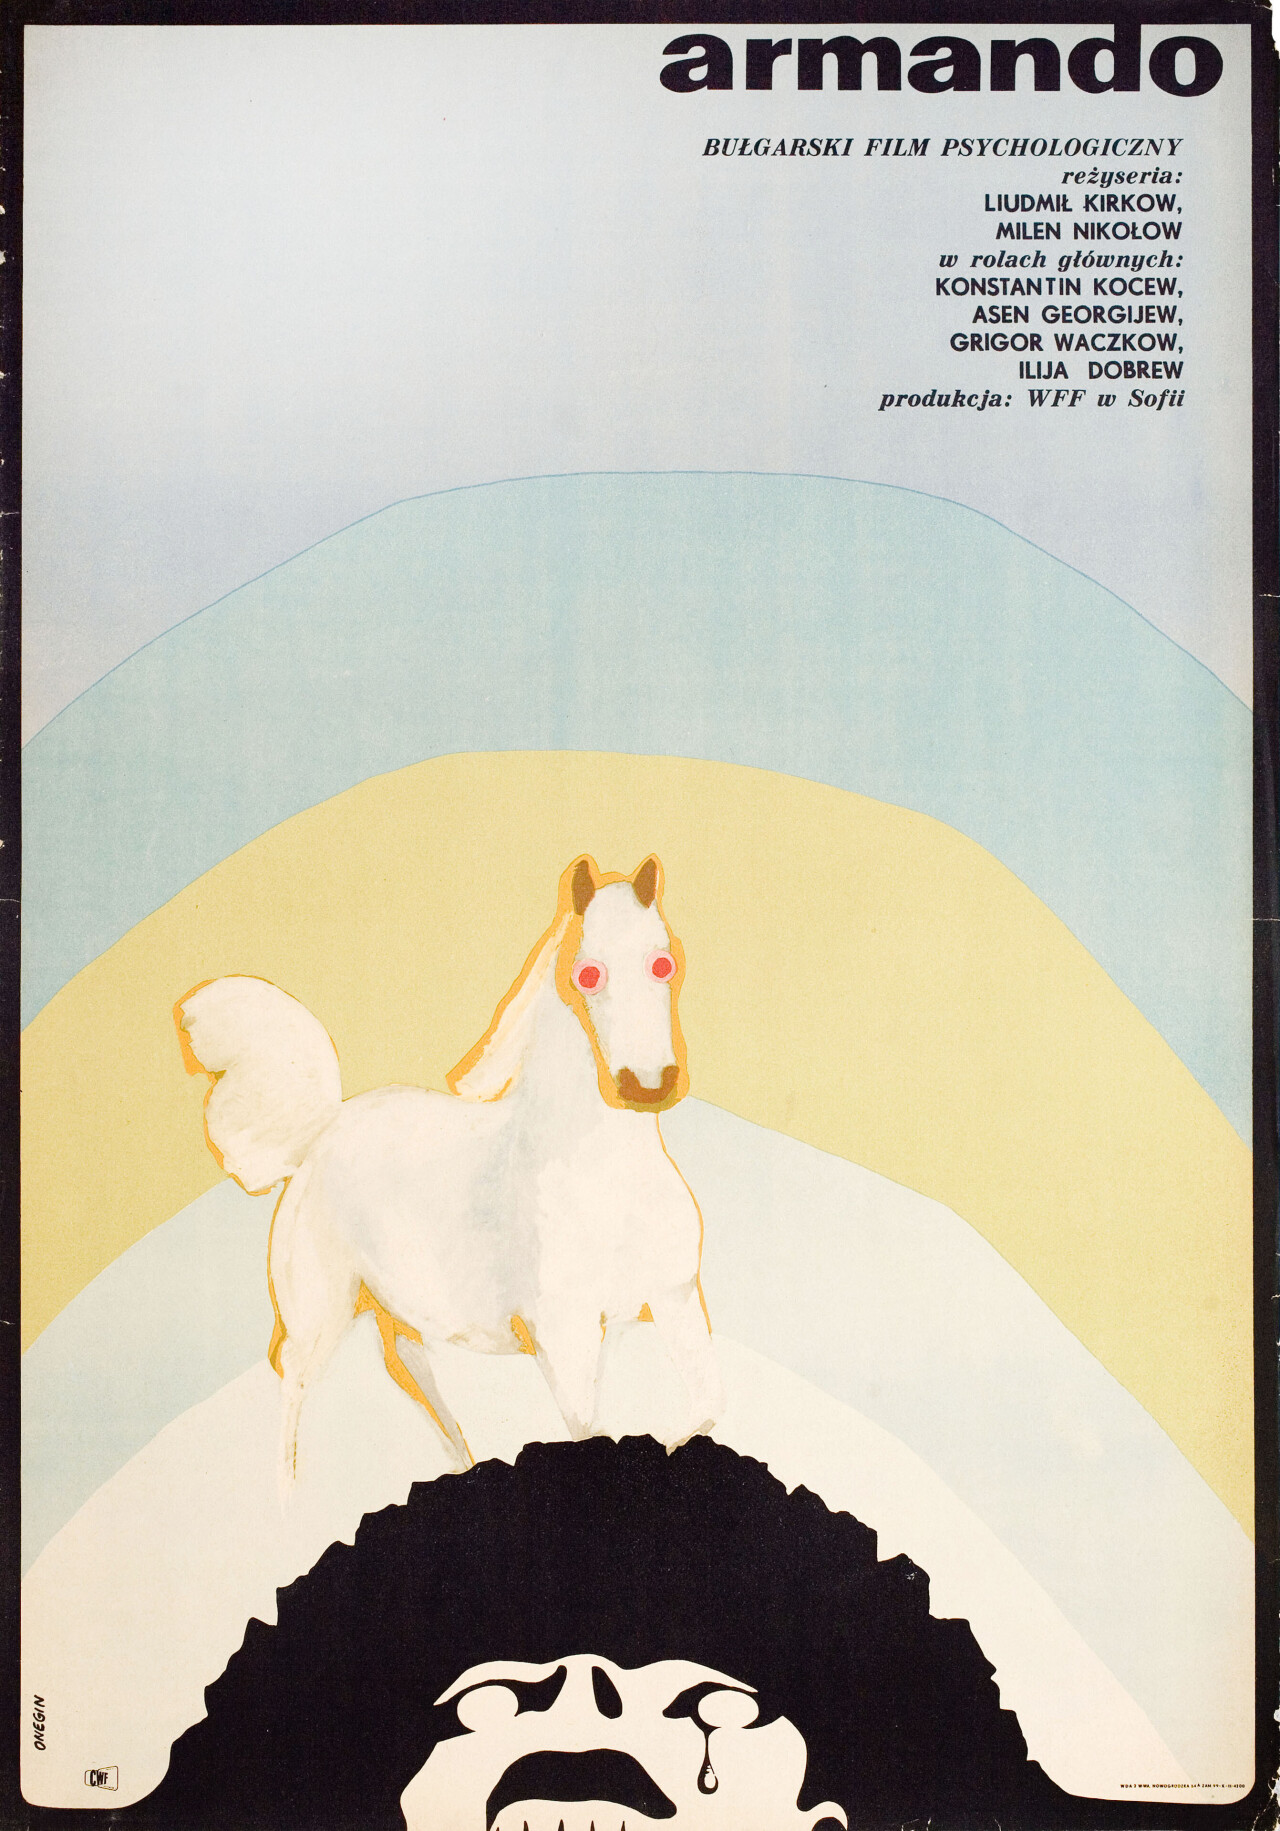 Армандо (Armando), 1969 год, режиссёр Людмил Кирков, польский постер к фильму, автор Онегин Домбровский (графический дизайн, 1970 год)